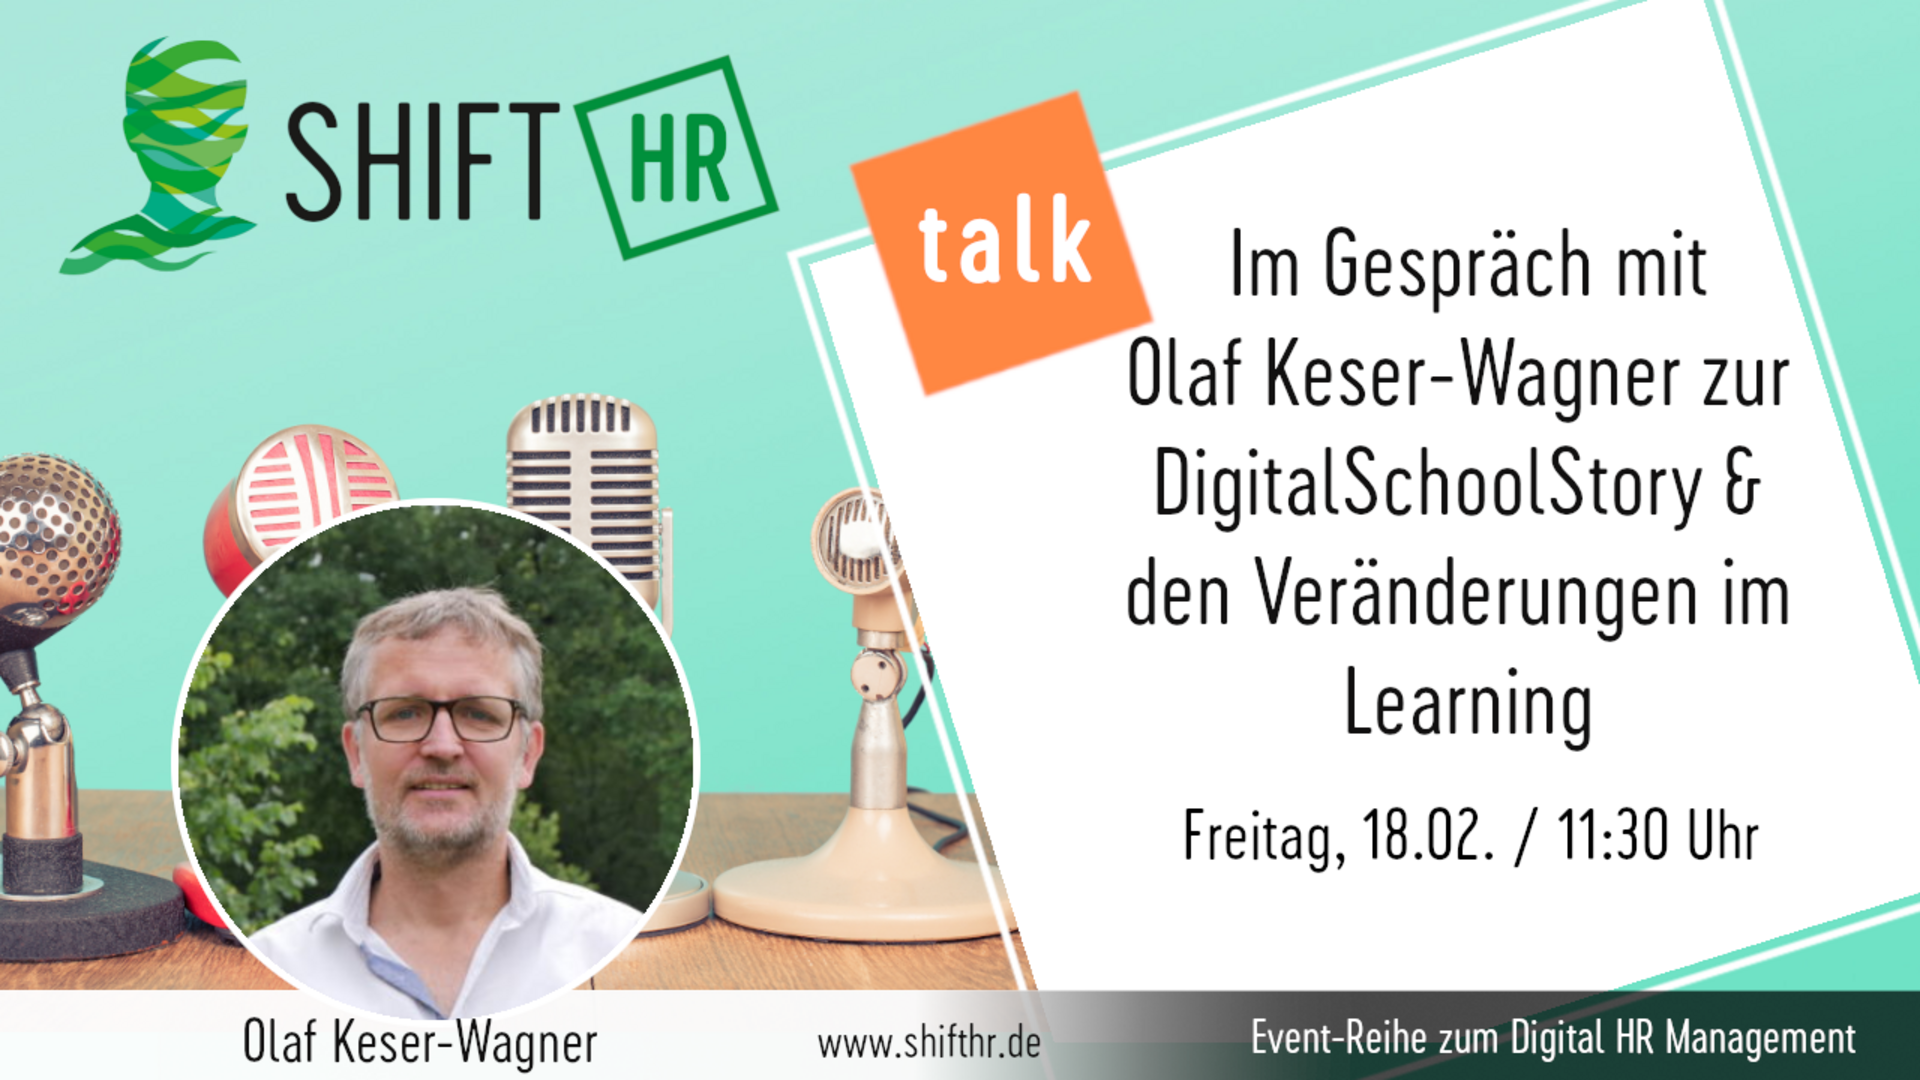 Im Gespräch mit Olaf Keser-Wagner zur DigitalSchoolStory & den Veränderungen im Learning